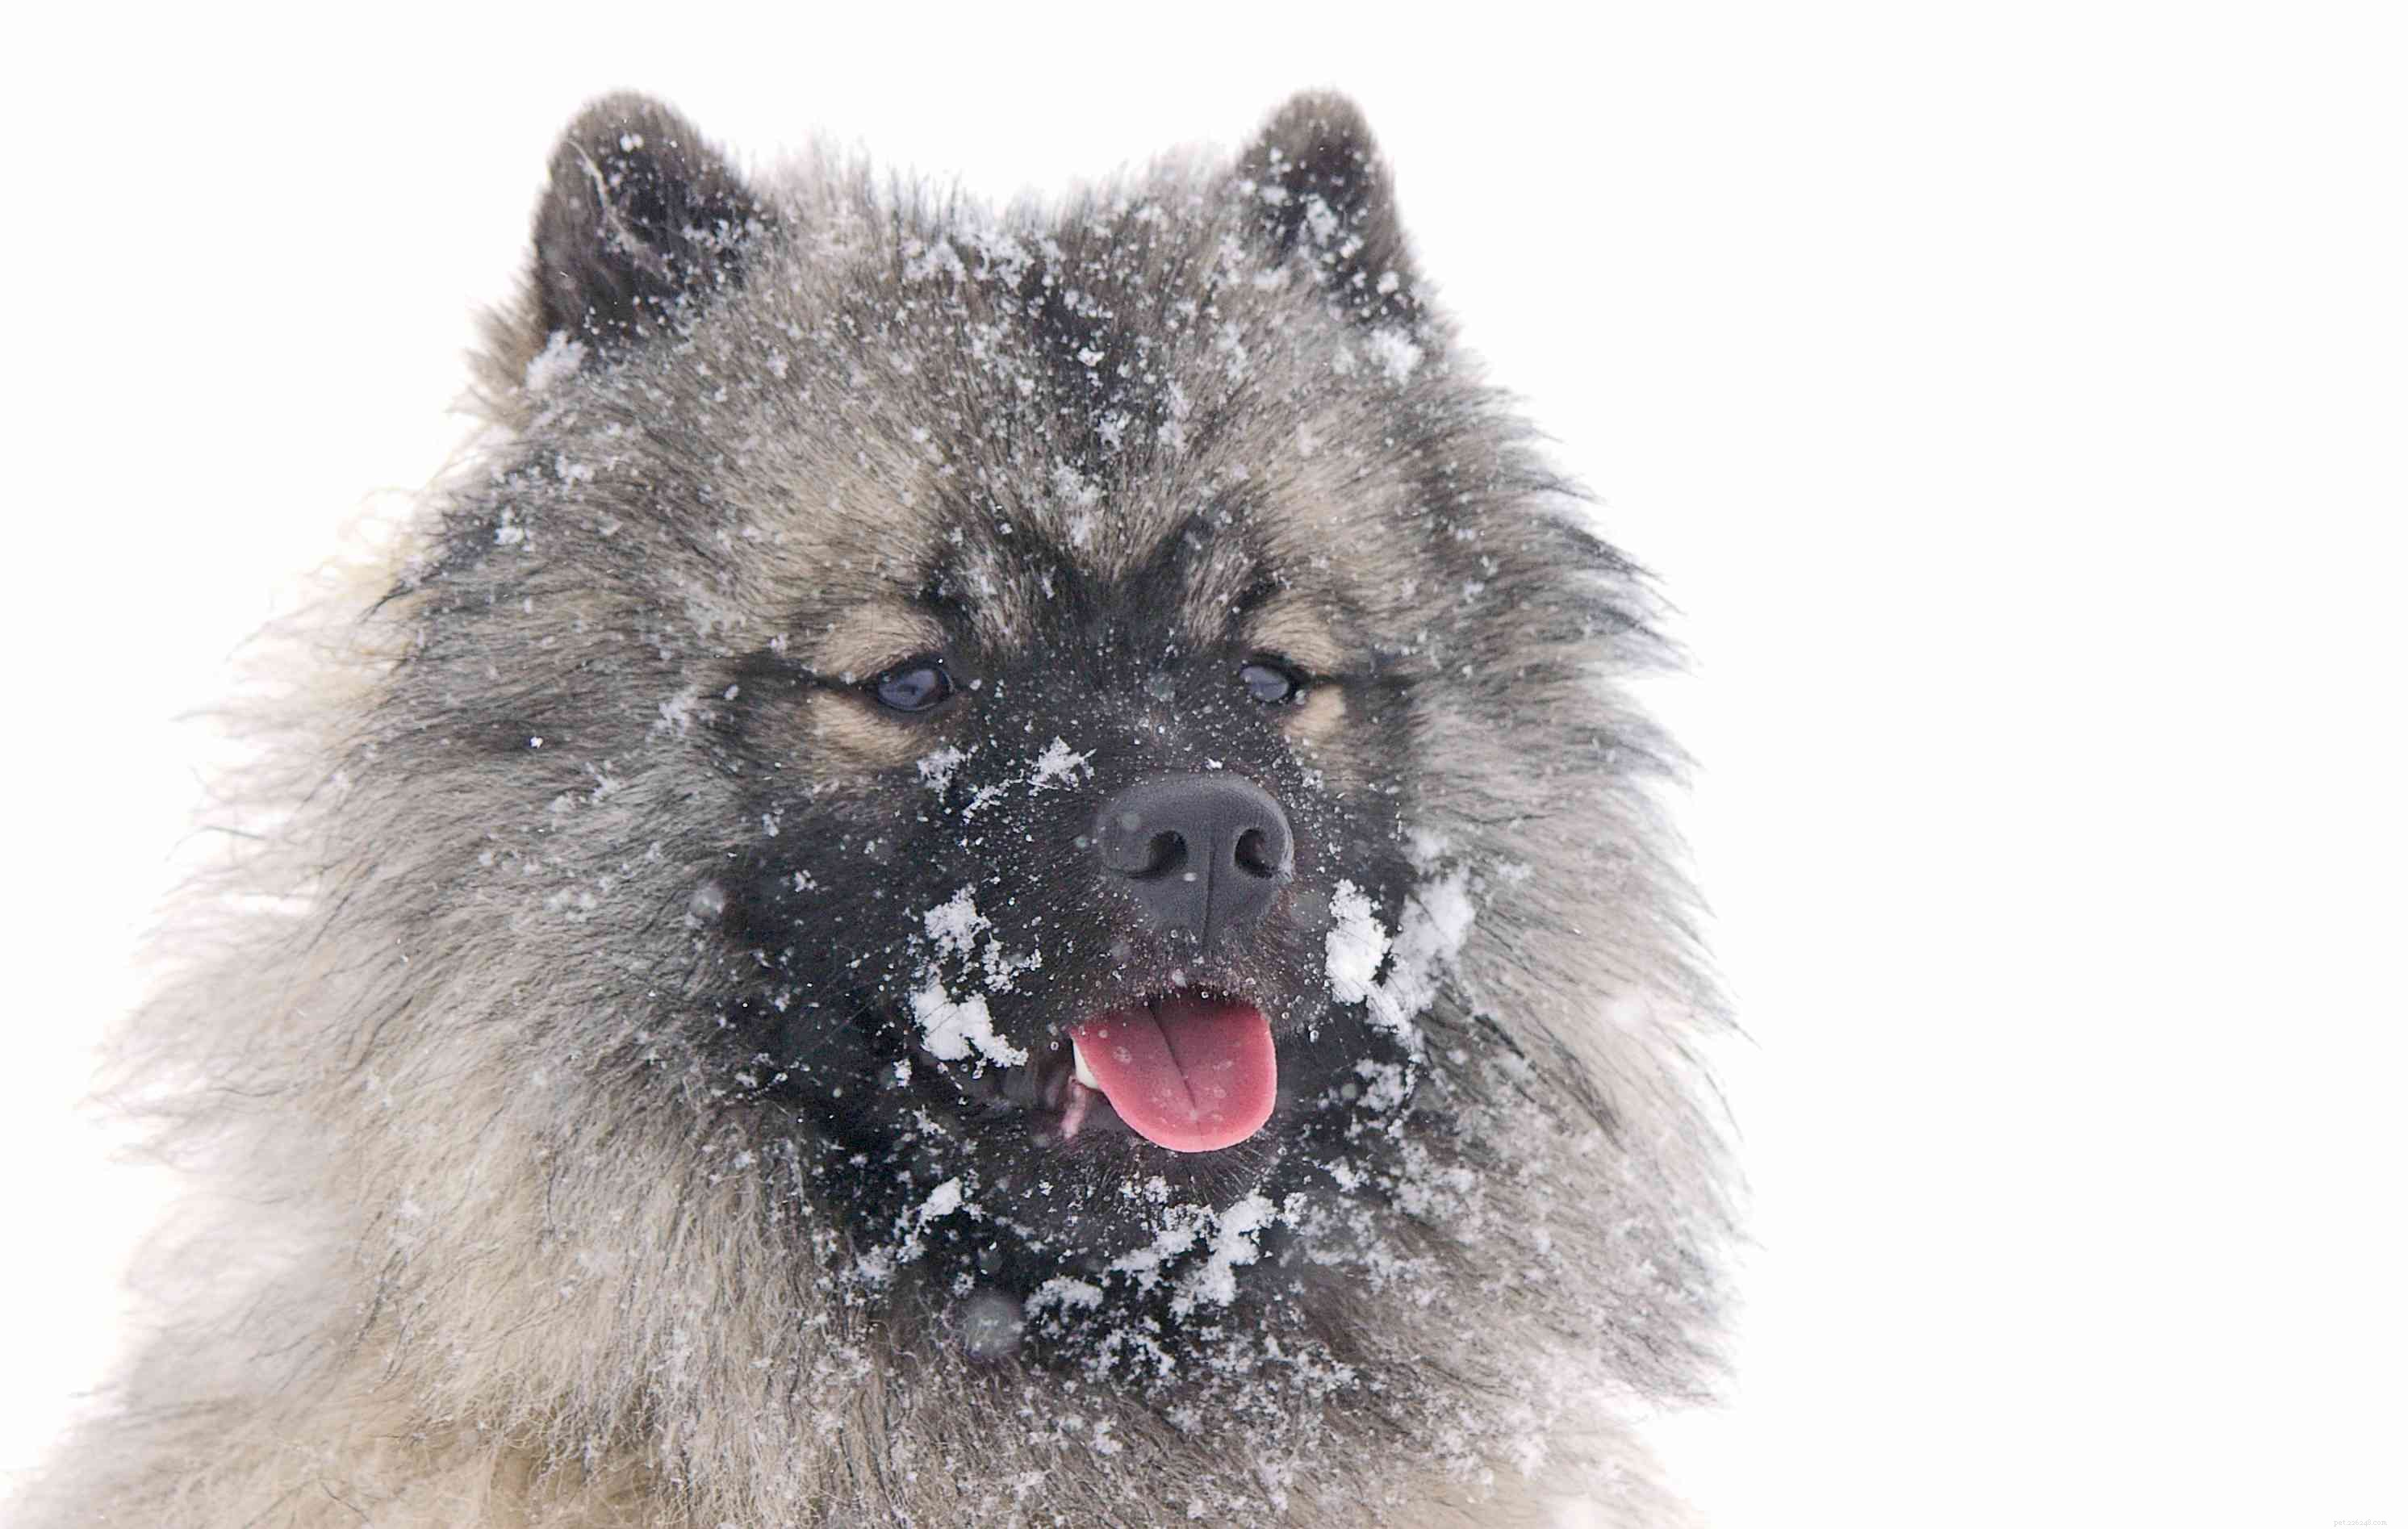 10 beste hondenrassen voor koud weer